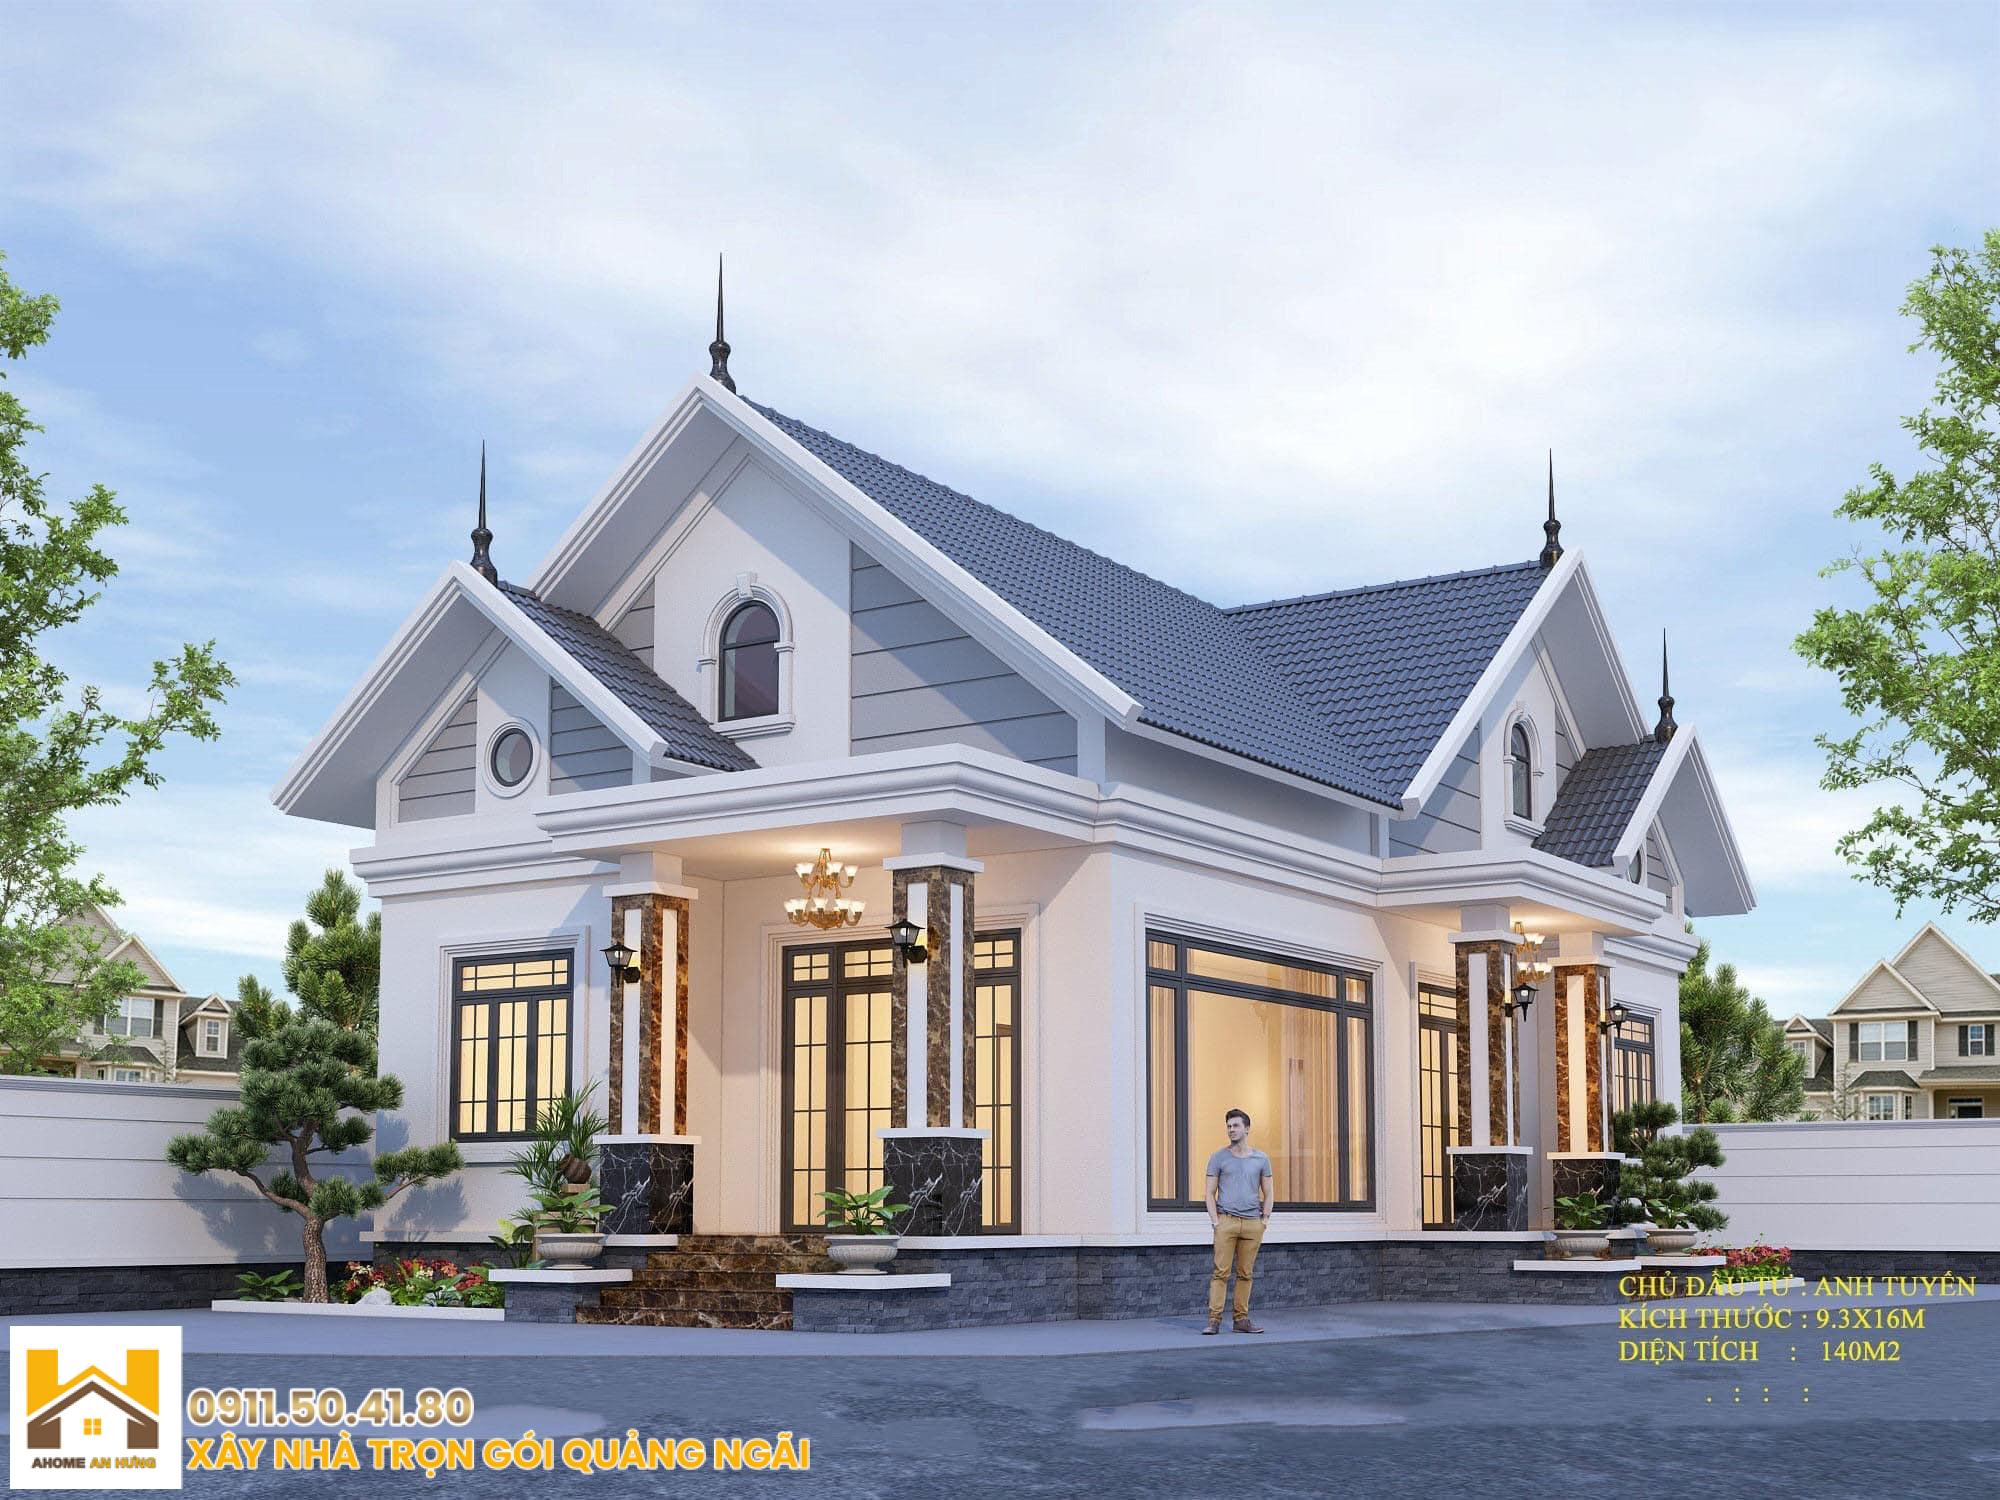 xây dựng nhà trọn gói Quảng Ngãi